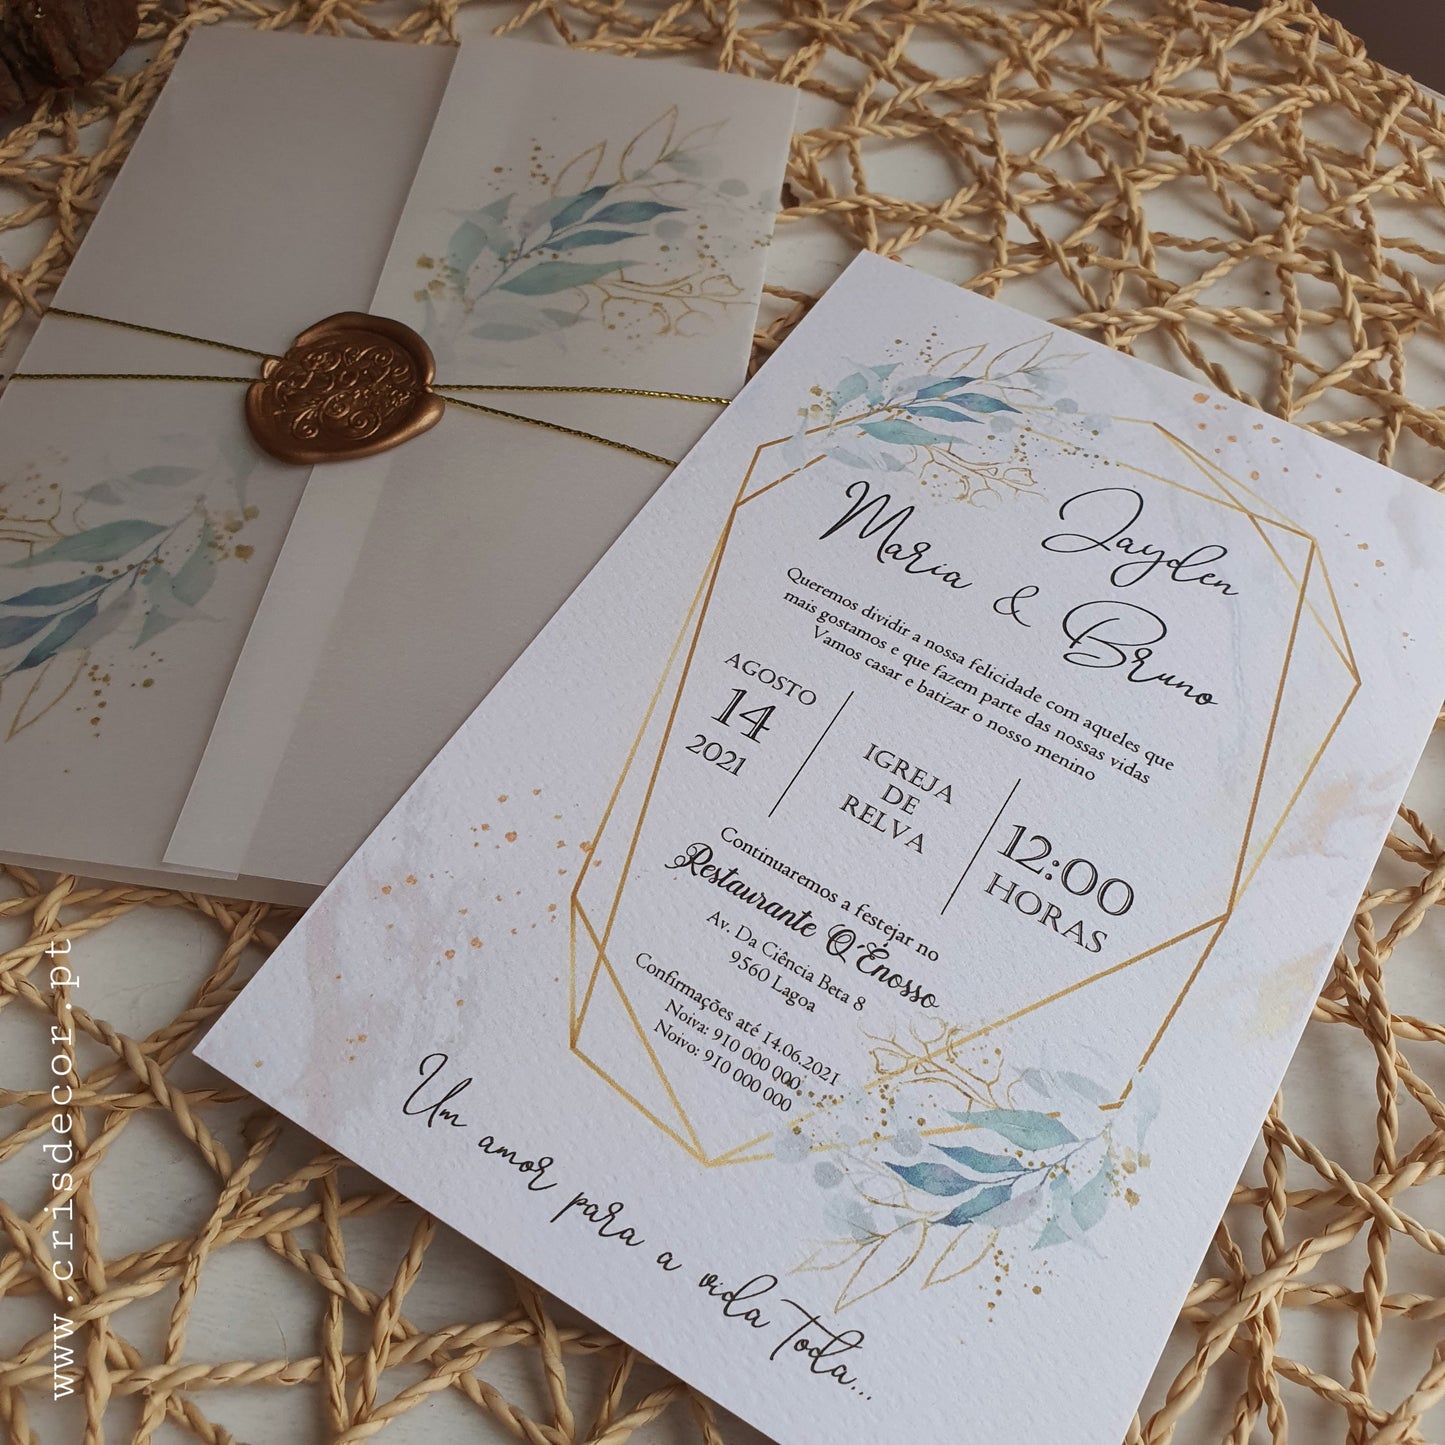 Convite de casamento gold and blue